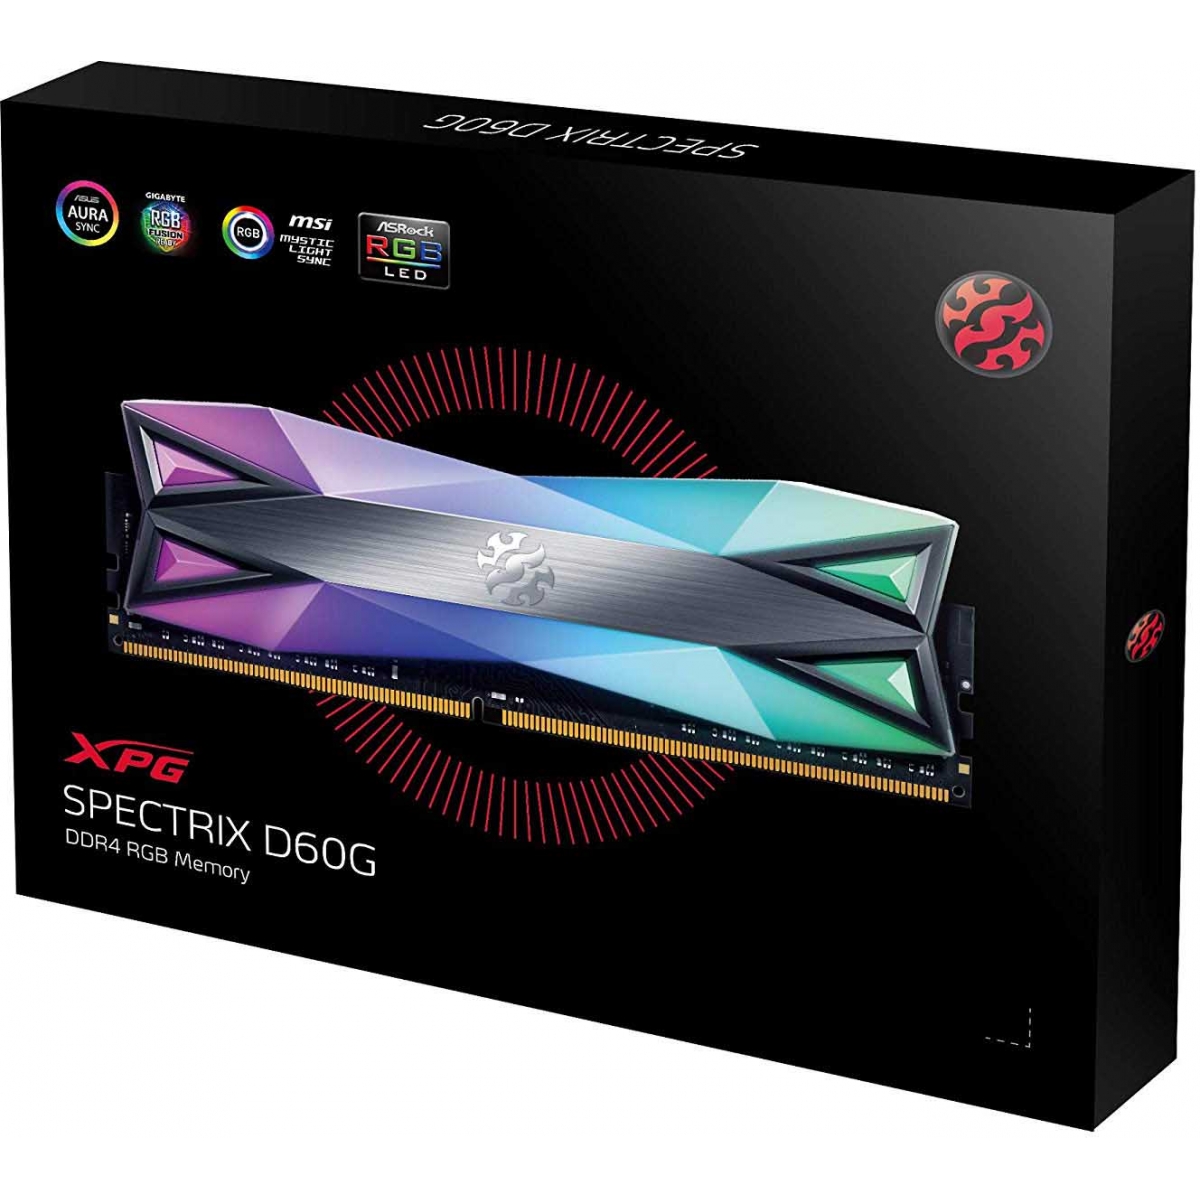 Memória DDR4 XPG Spectrix D60G RGB, 16GB (2X8GB) 3000Mhz, AX4U300038G16-DT60